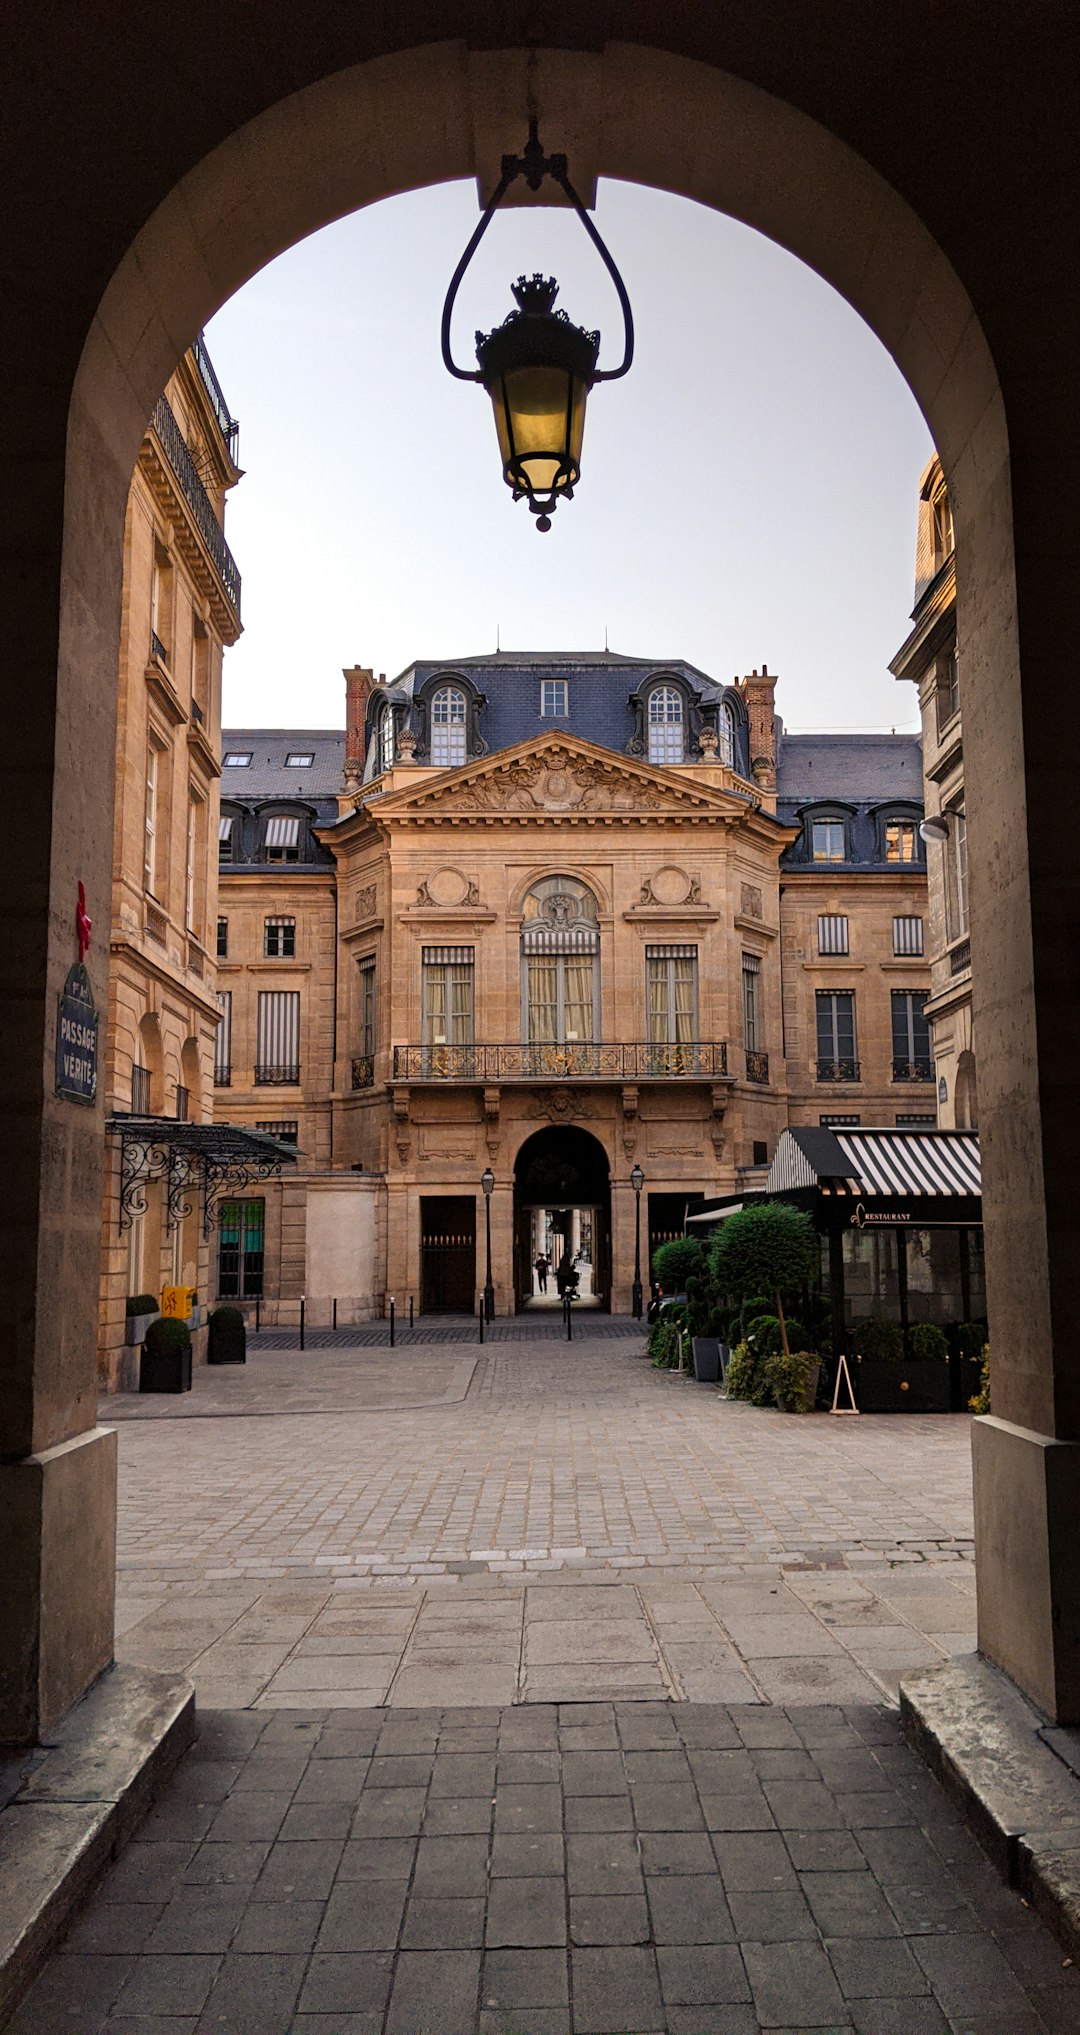 Town photo spot 1 Galerie des Proues Montmartre